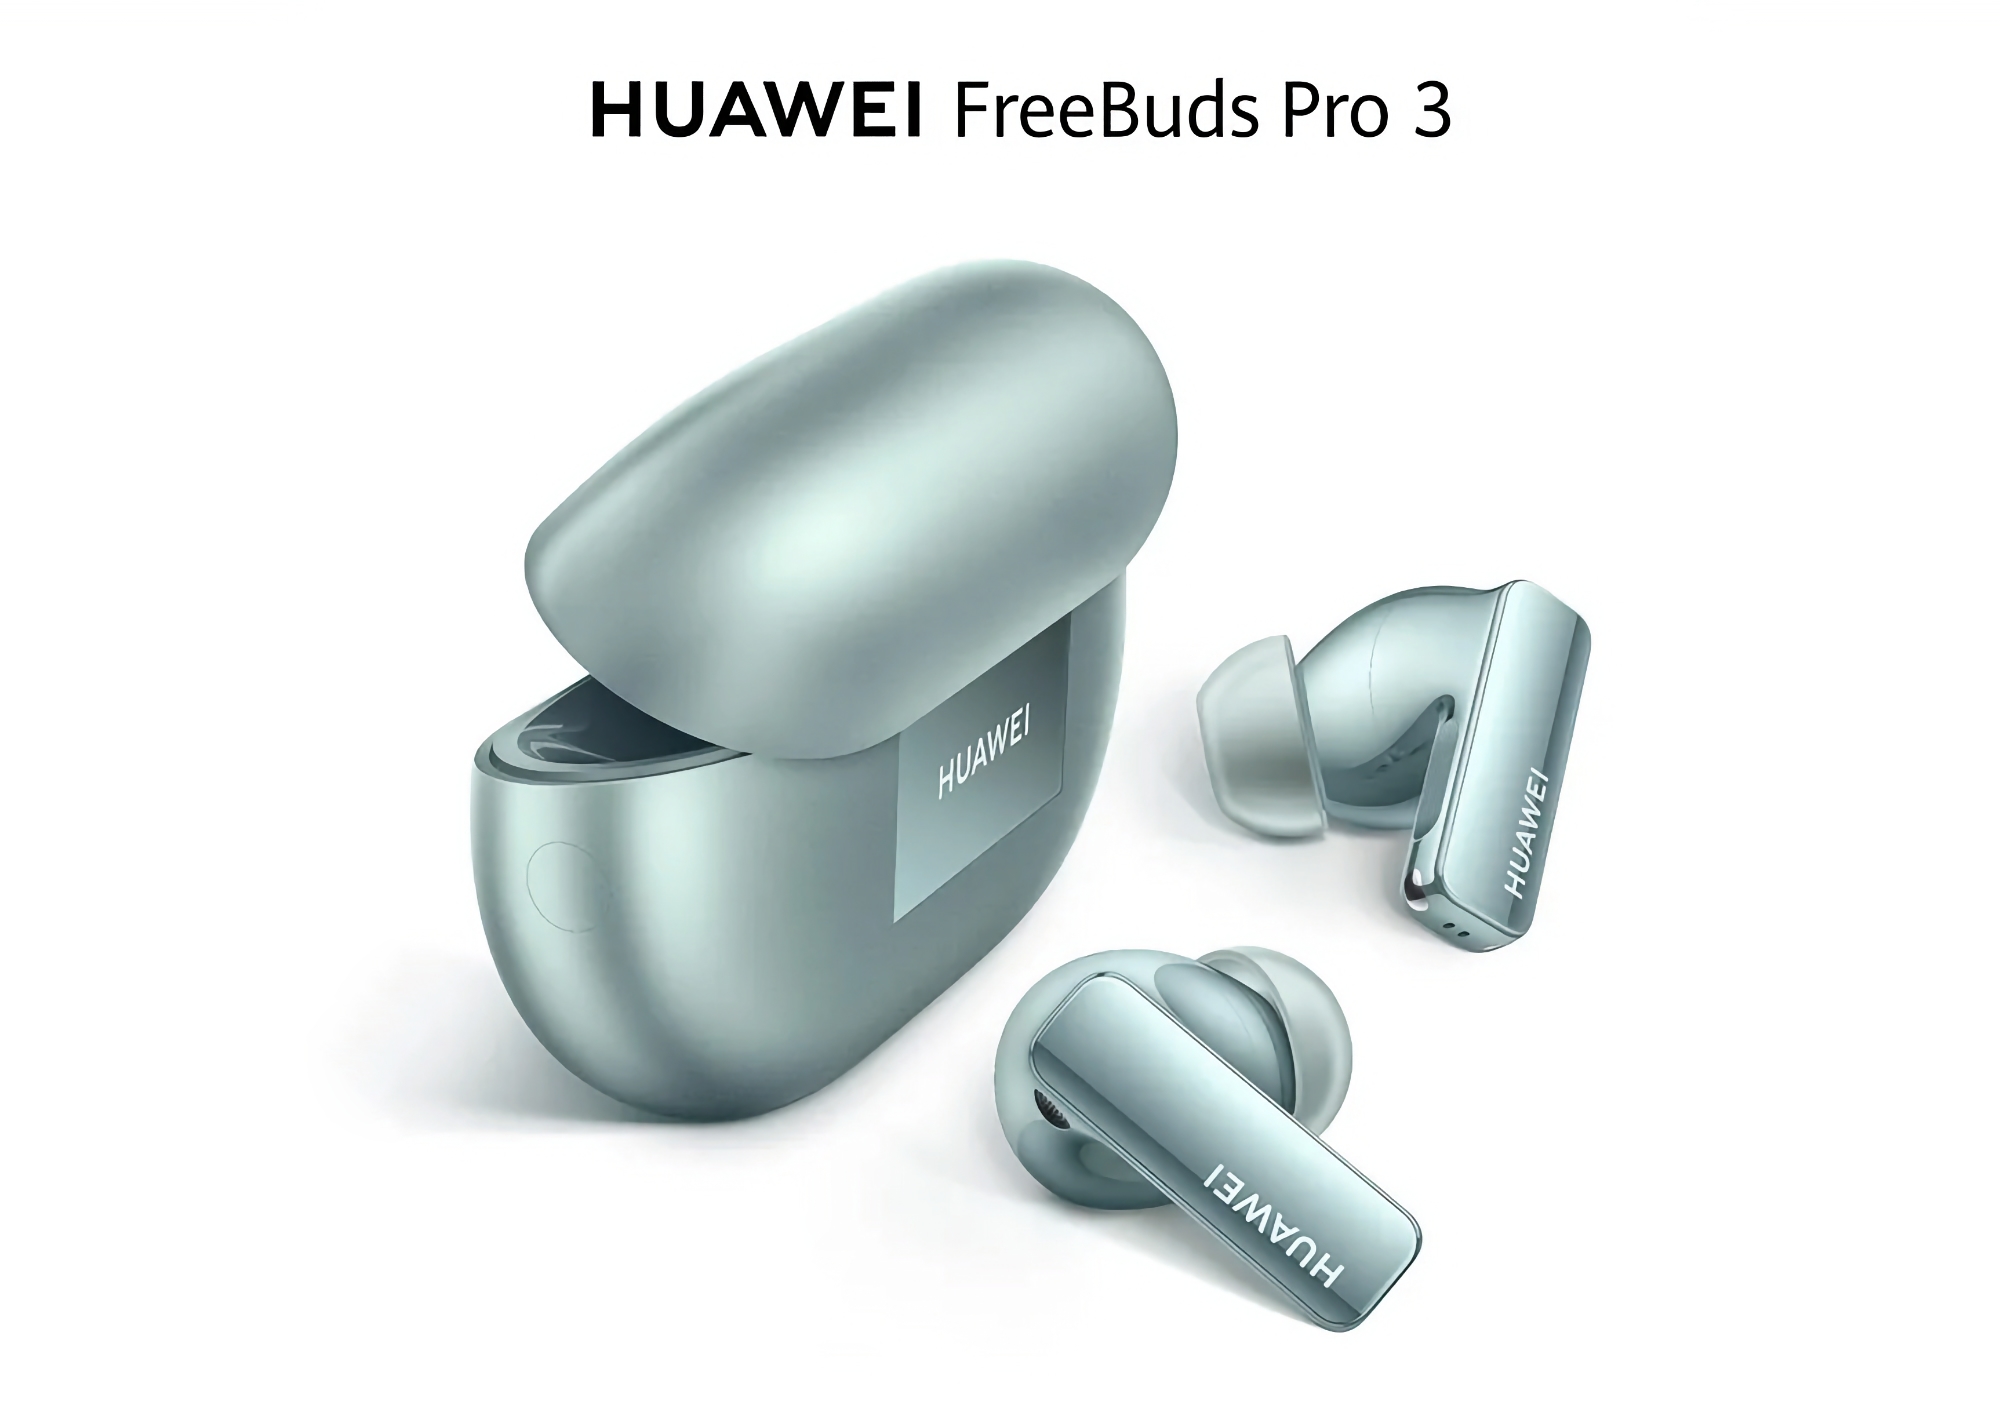 Huawei FreeBuds Pro 3 disponibile su Amazon con 20 euro di sconto